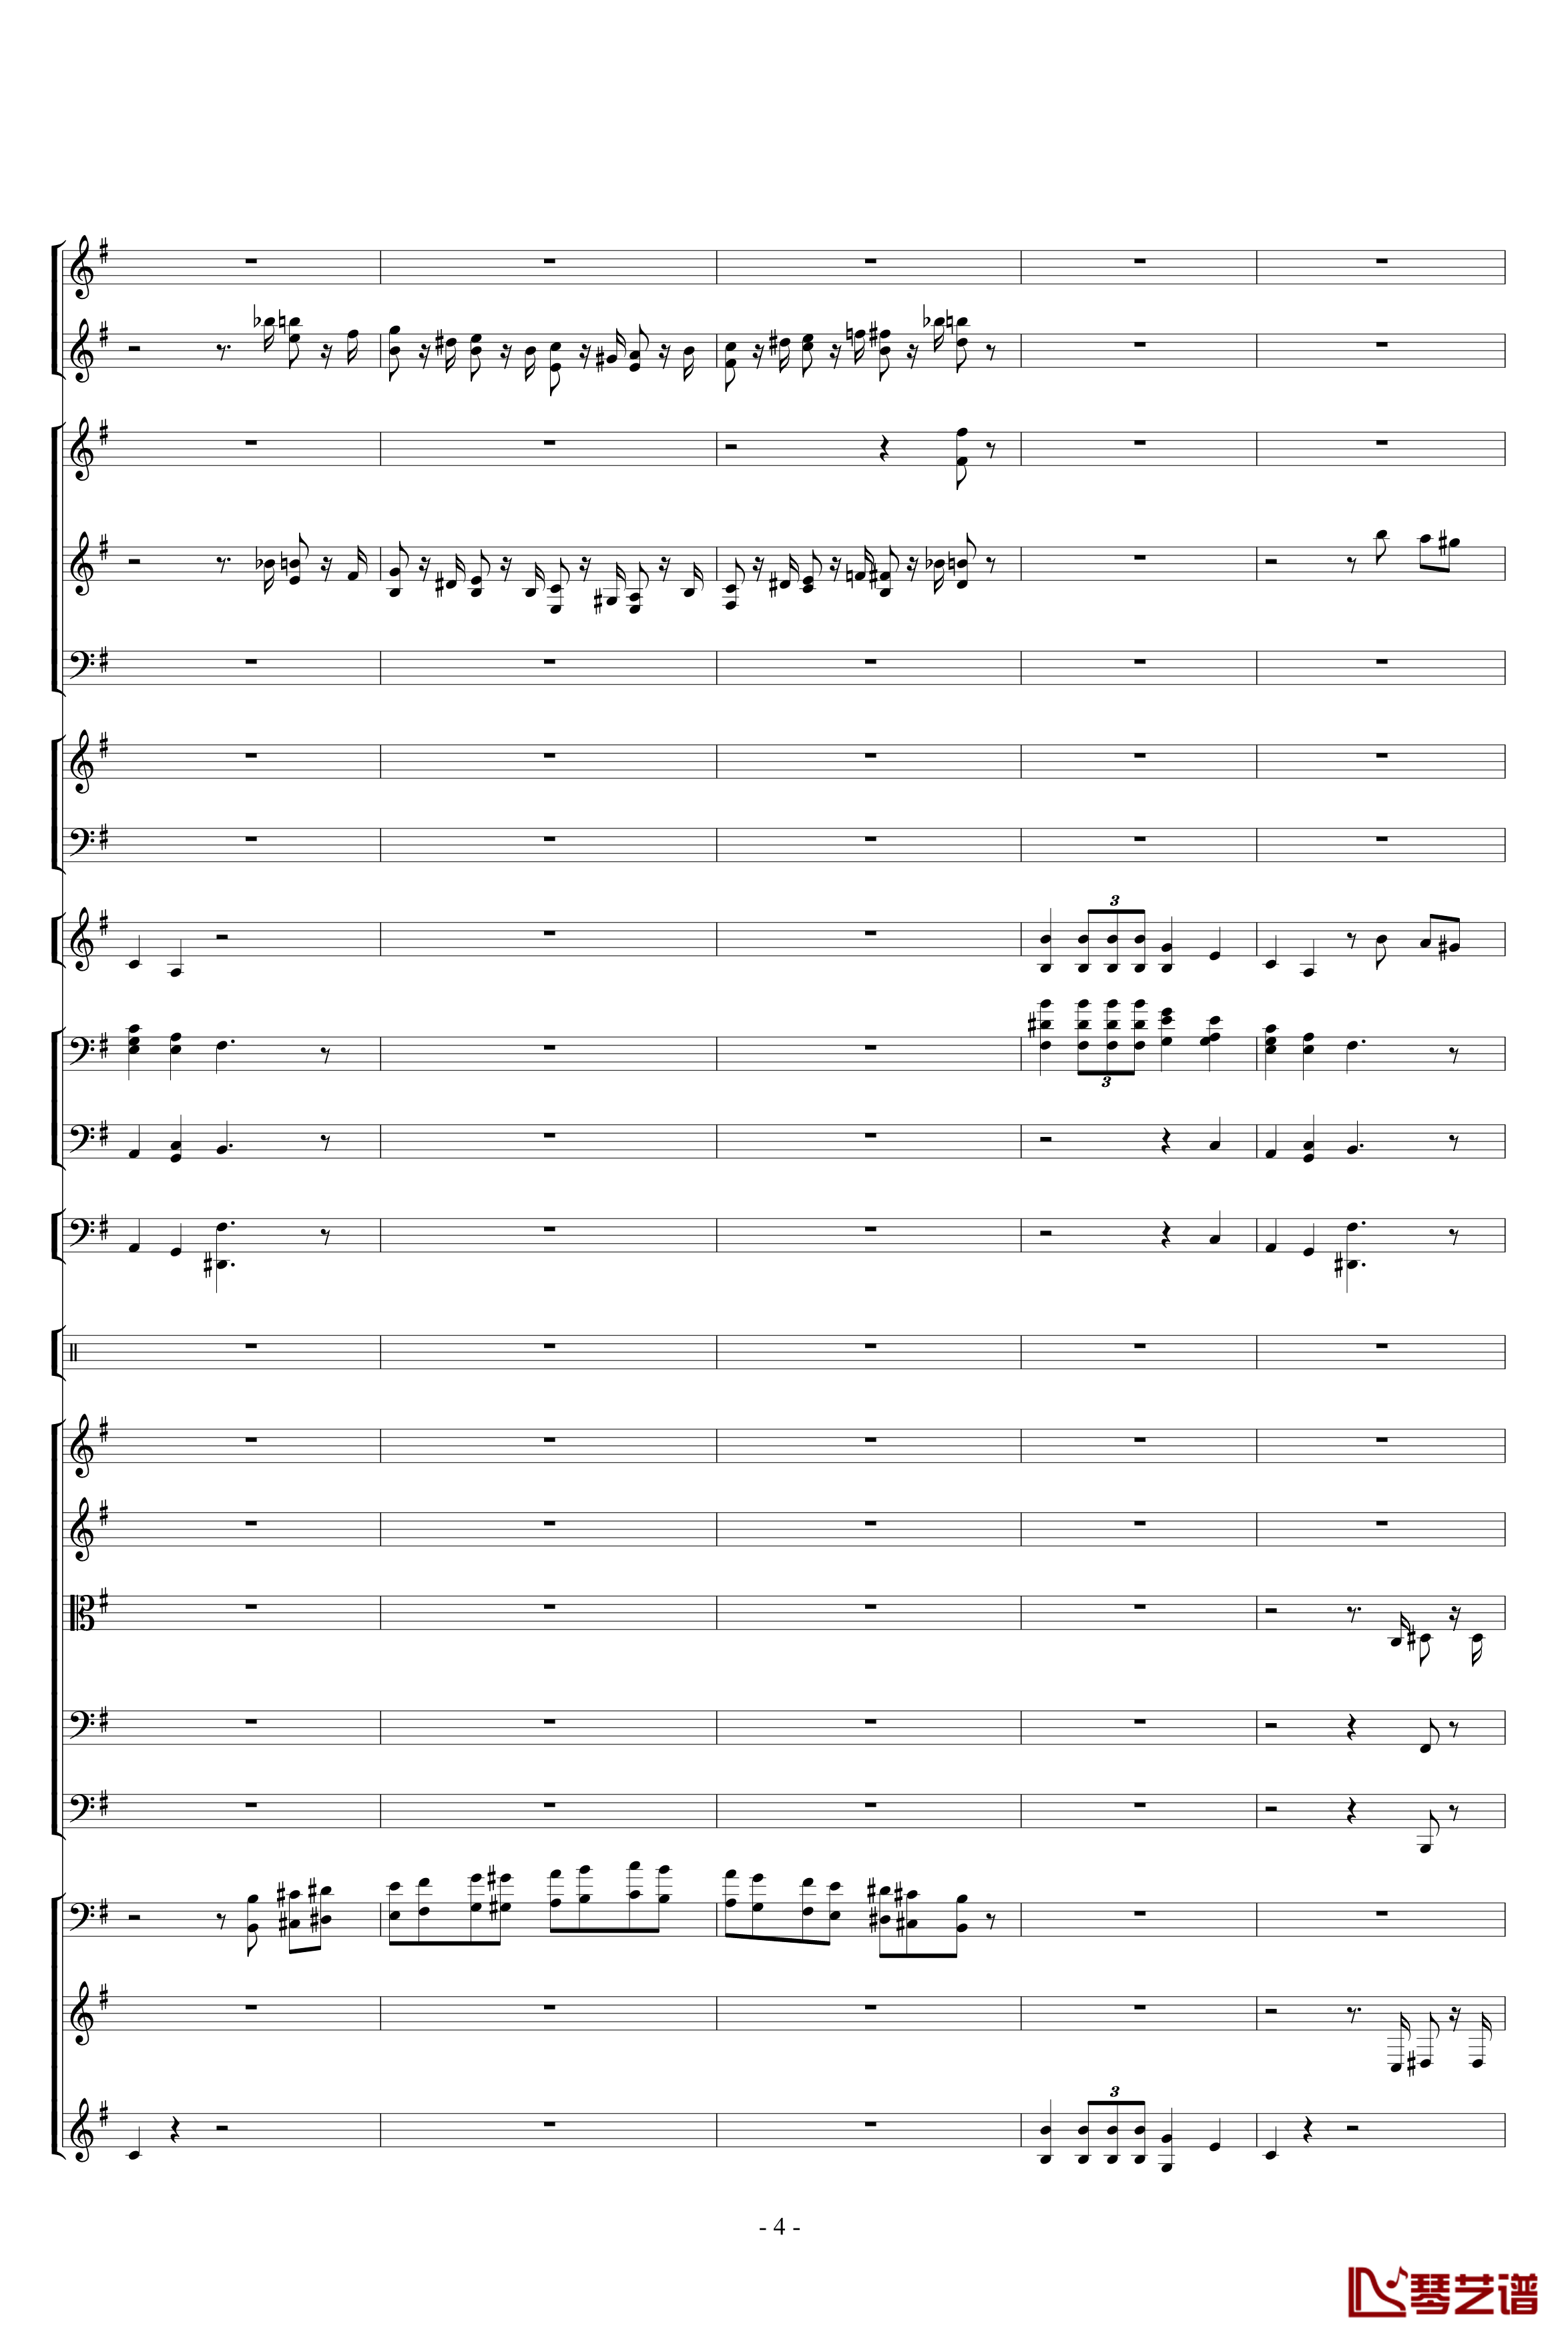 胡桃夹子组曲之进行曲钢琴谱-柴科夫斯基-Peter Ilyich Tchaikovsky4